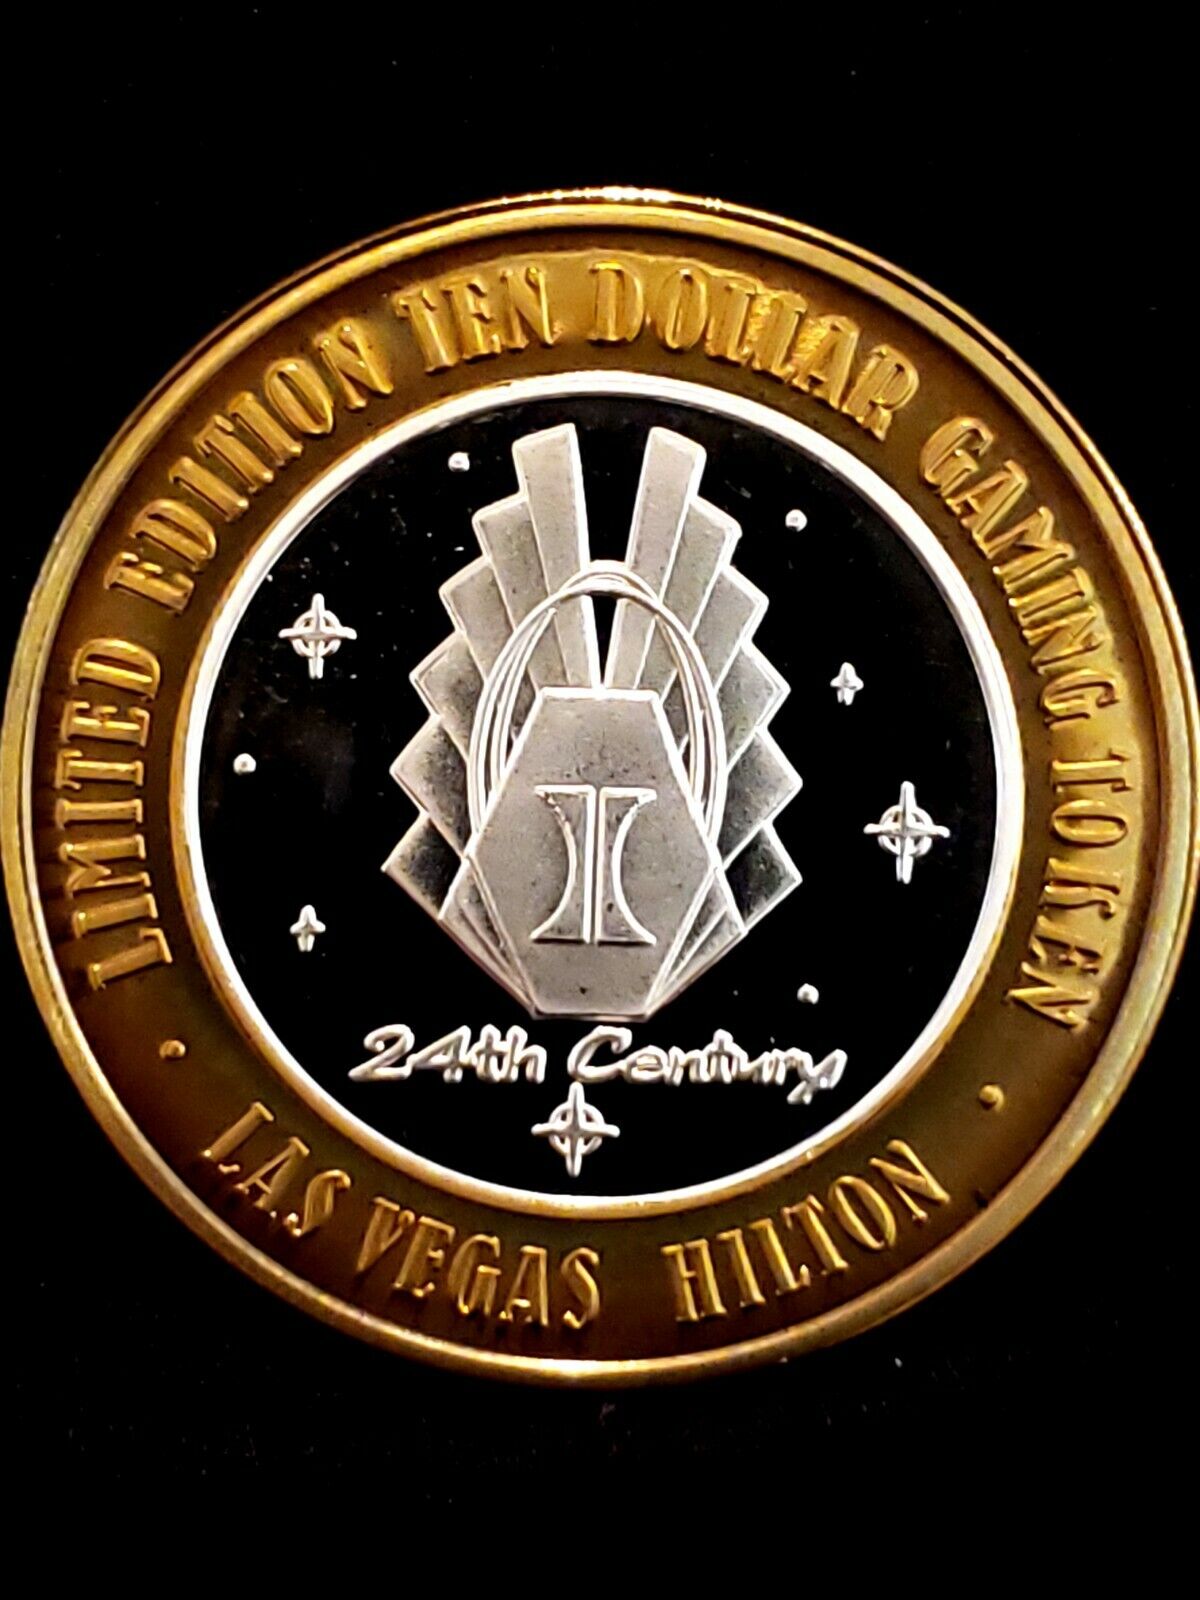 $10 Las Vegas Hilton 24th Century .999 Silver Strike Gaming Token, Nv.